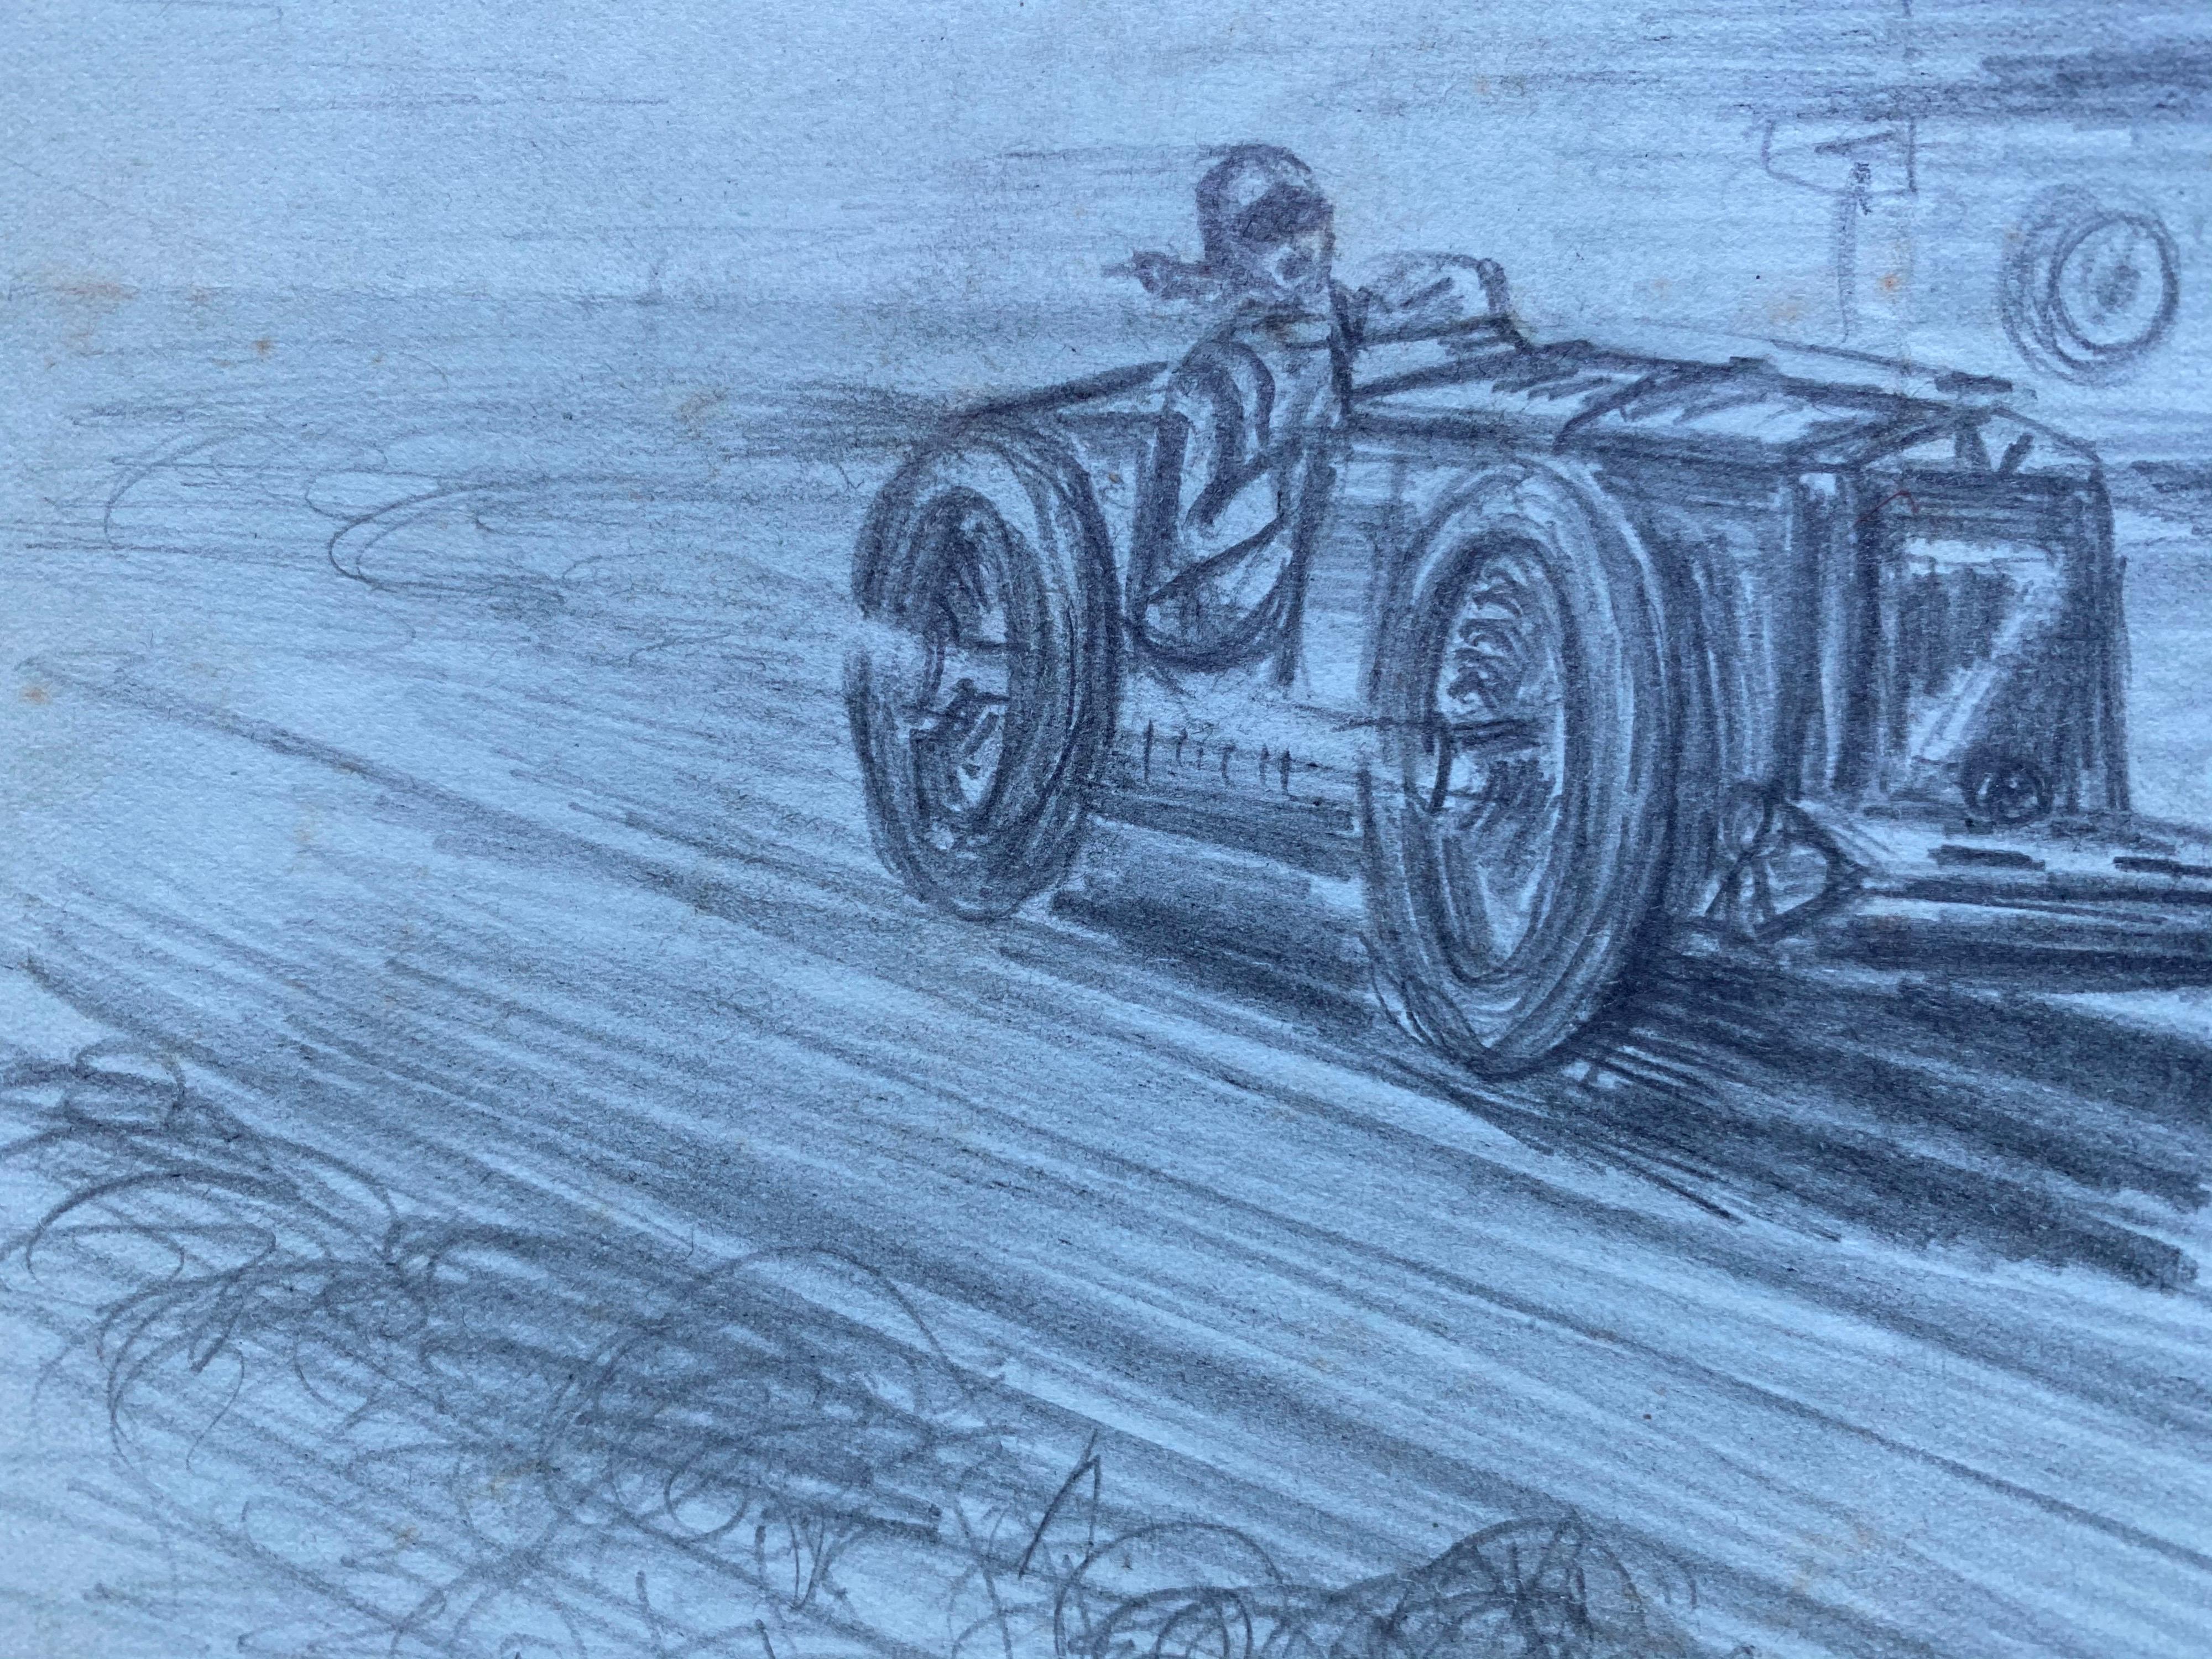 Original 1930er Jahre Vintage Motor Autorennen Original Zeichnung signiert und datiert (Blau), Landscape Art, von K. B. White